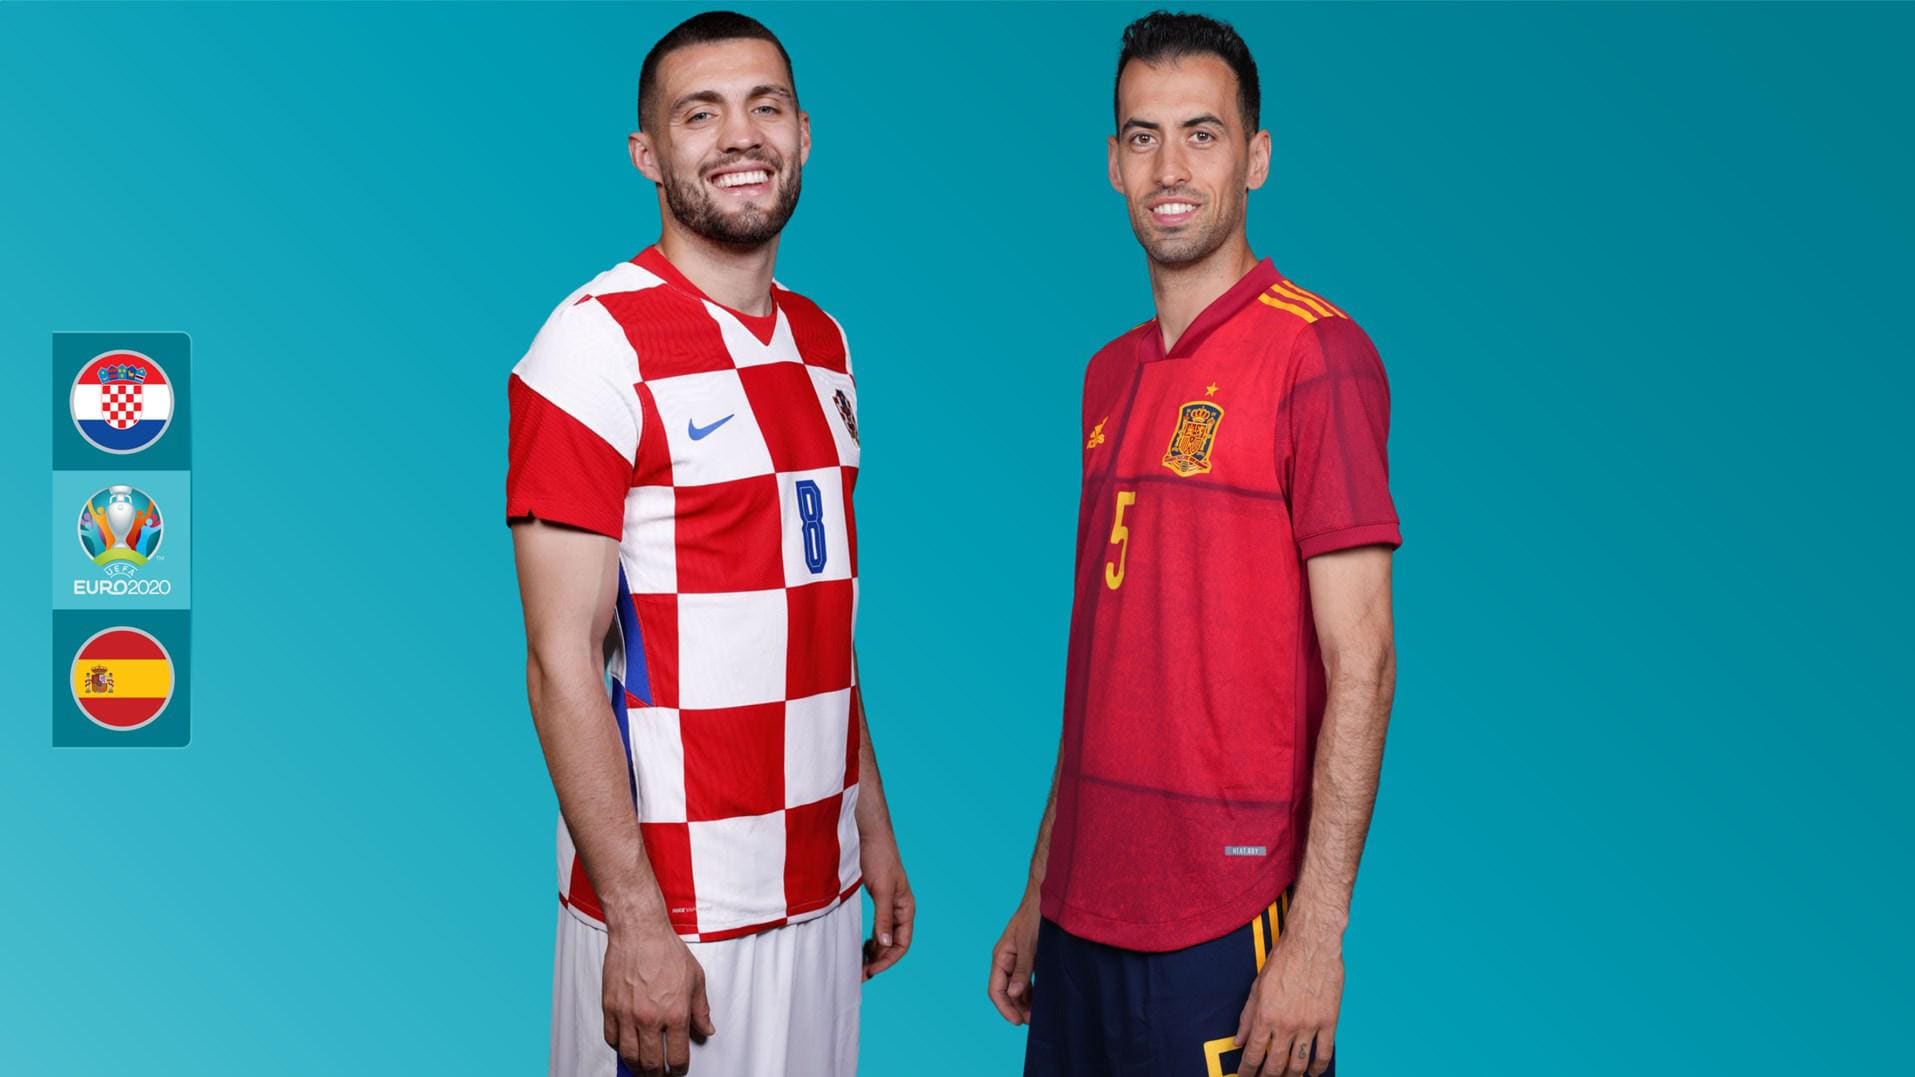 Spain vs croatia